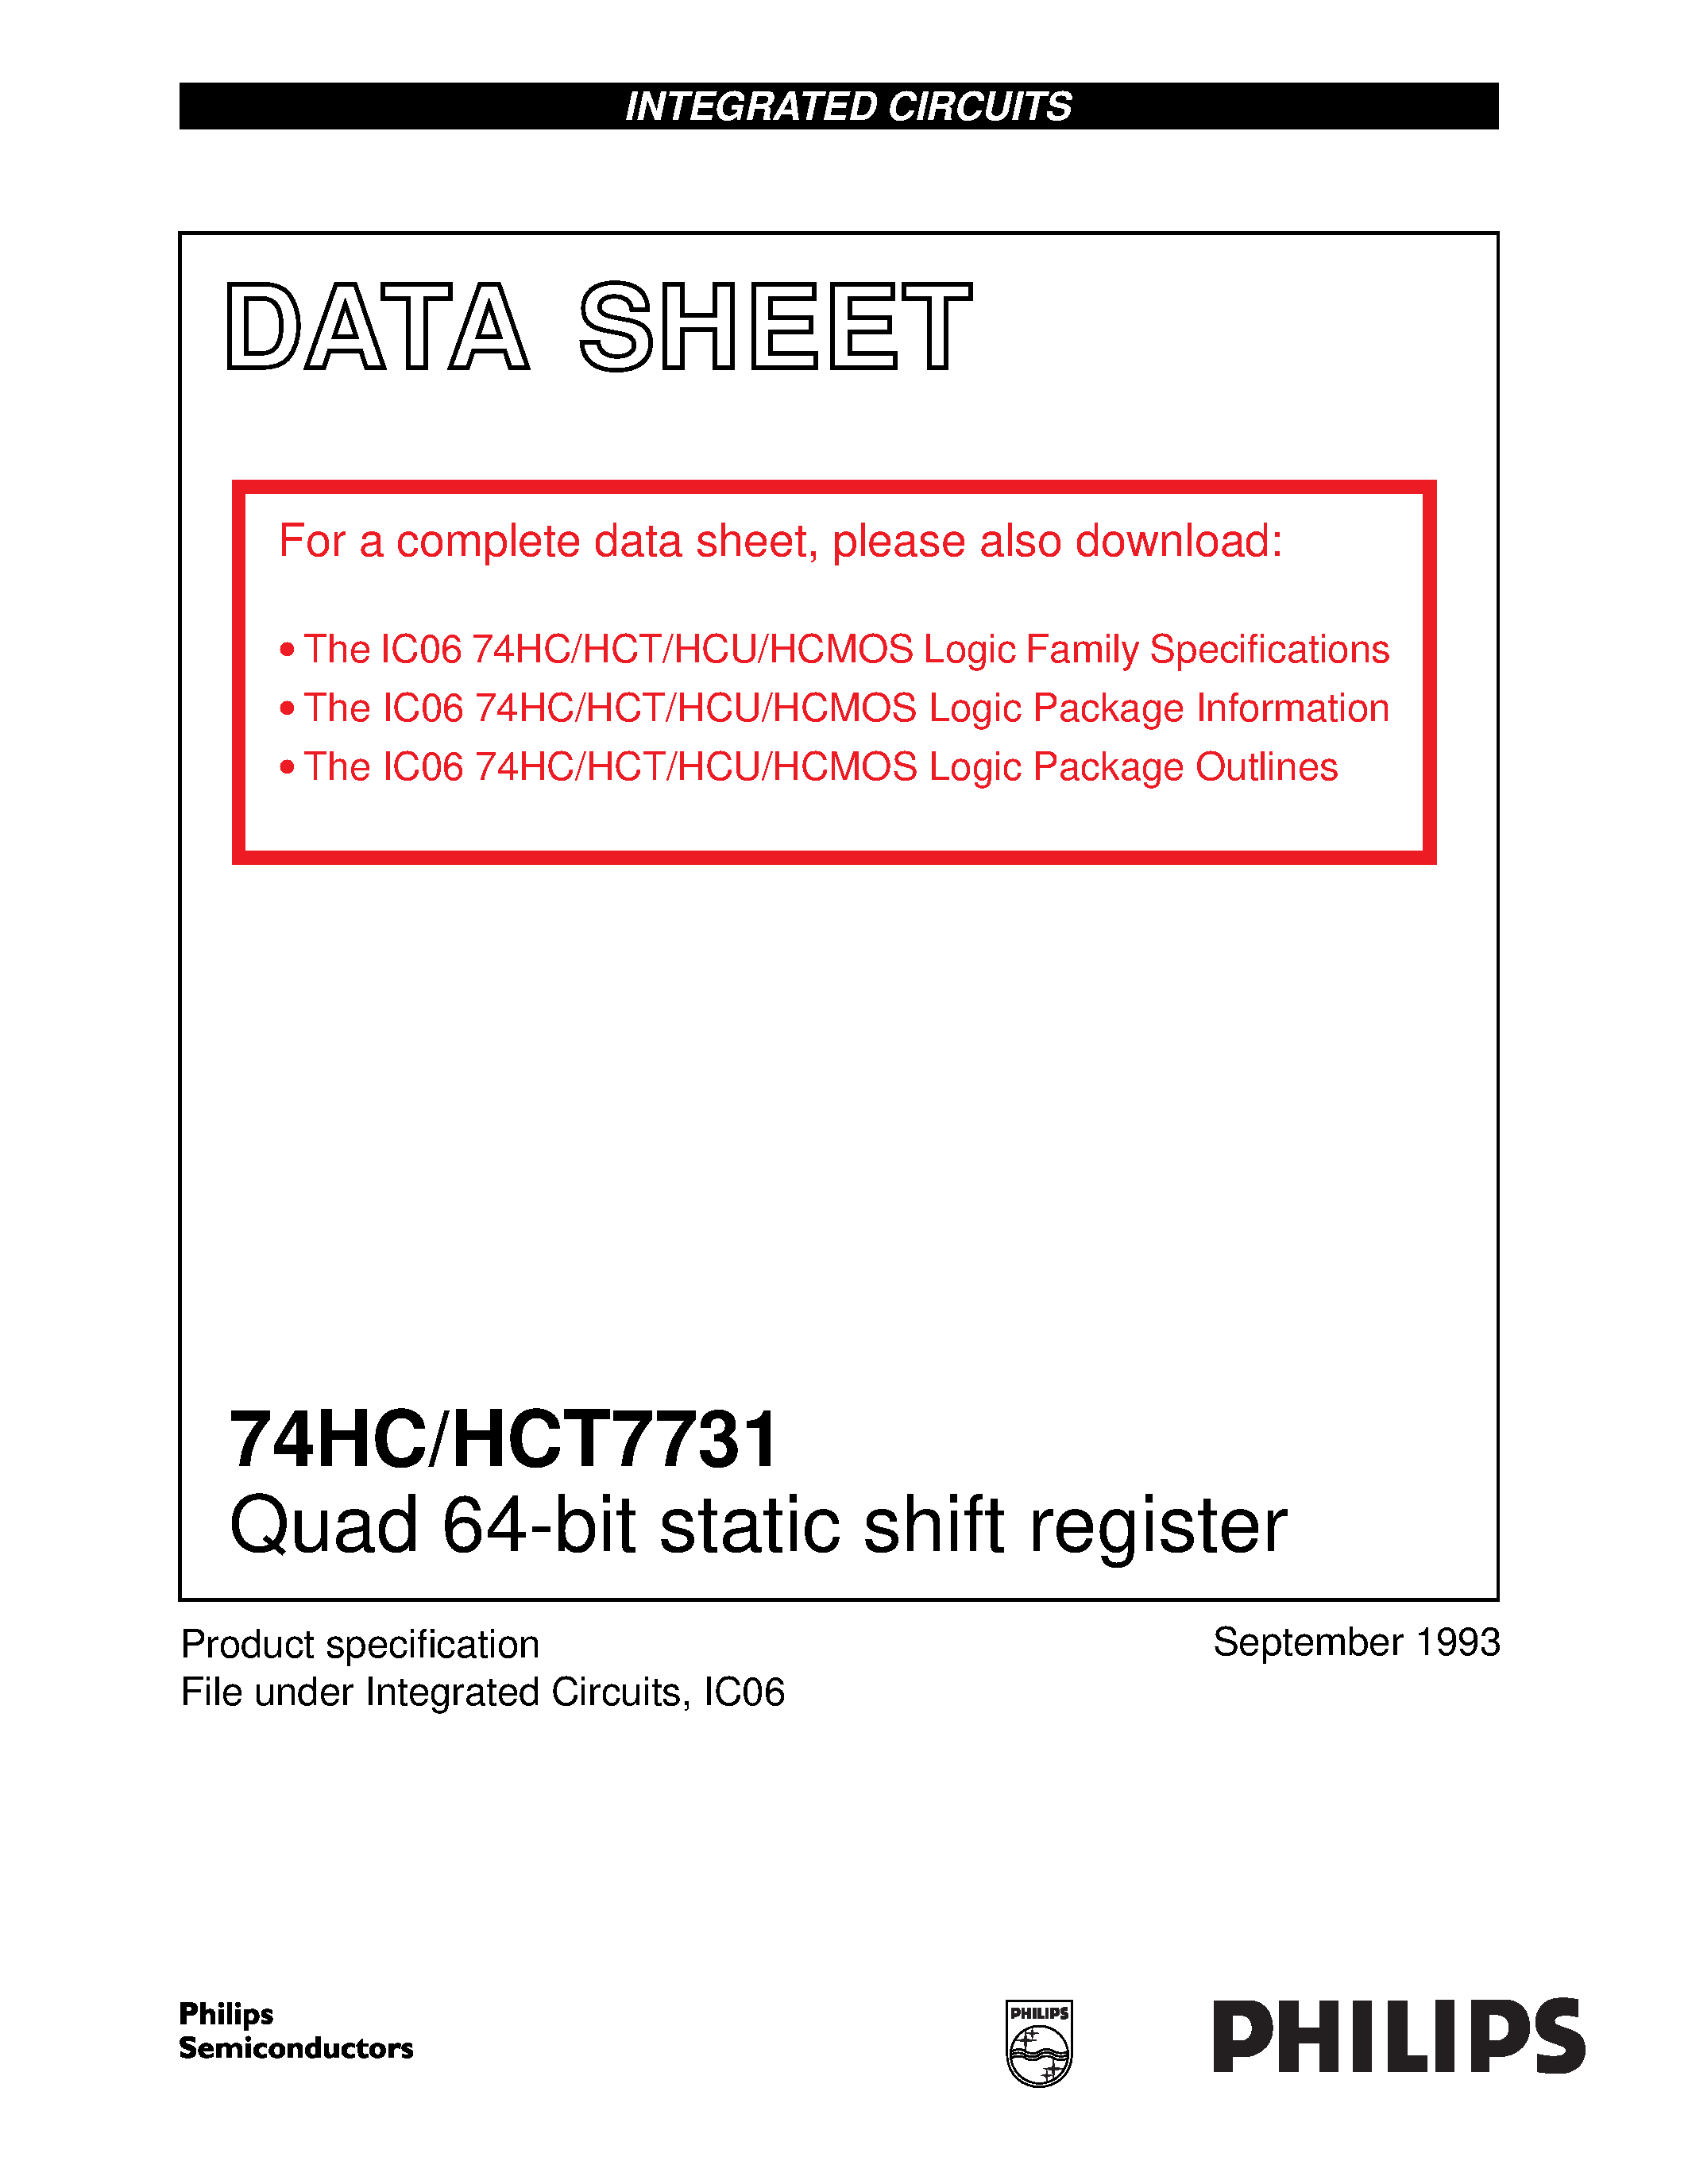 Даташит 74HCT7731N - Quad 64-bit static shift register страница 1